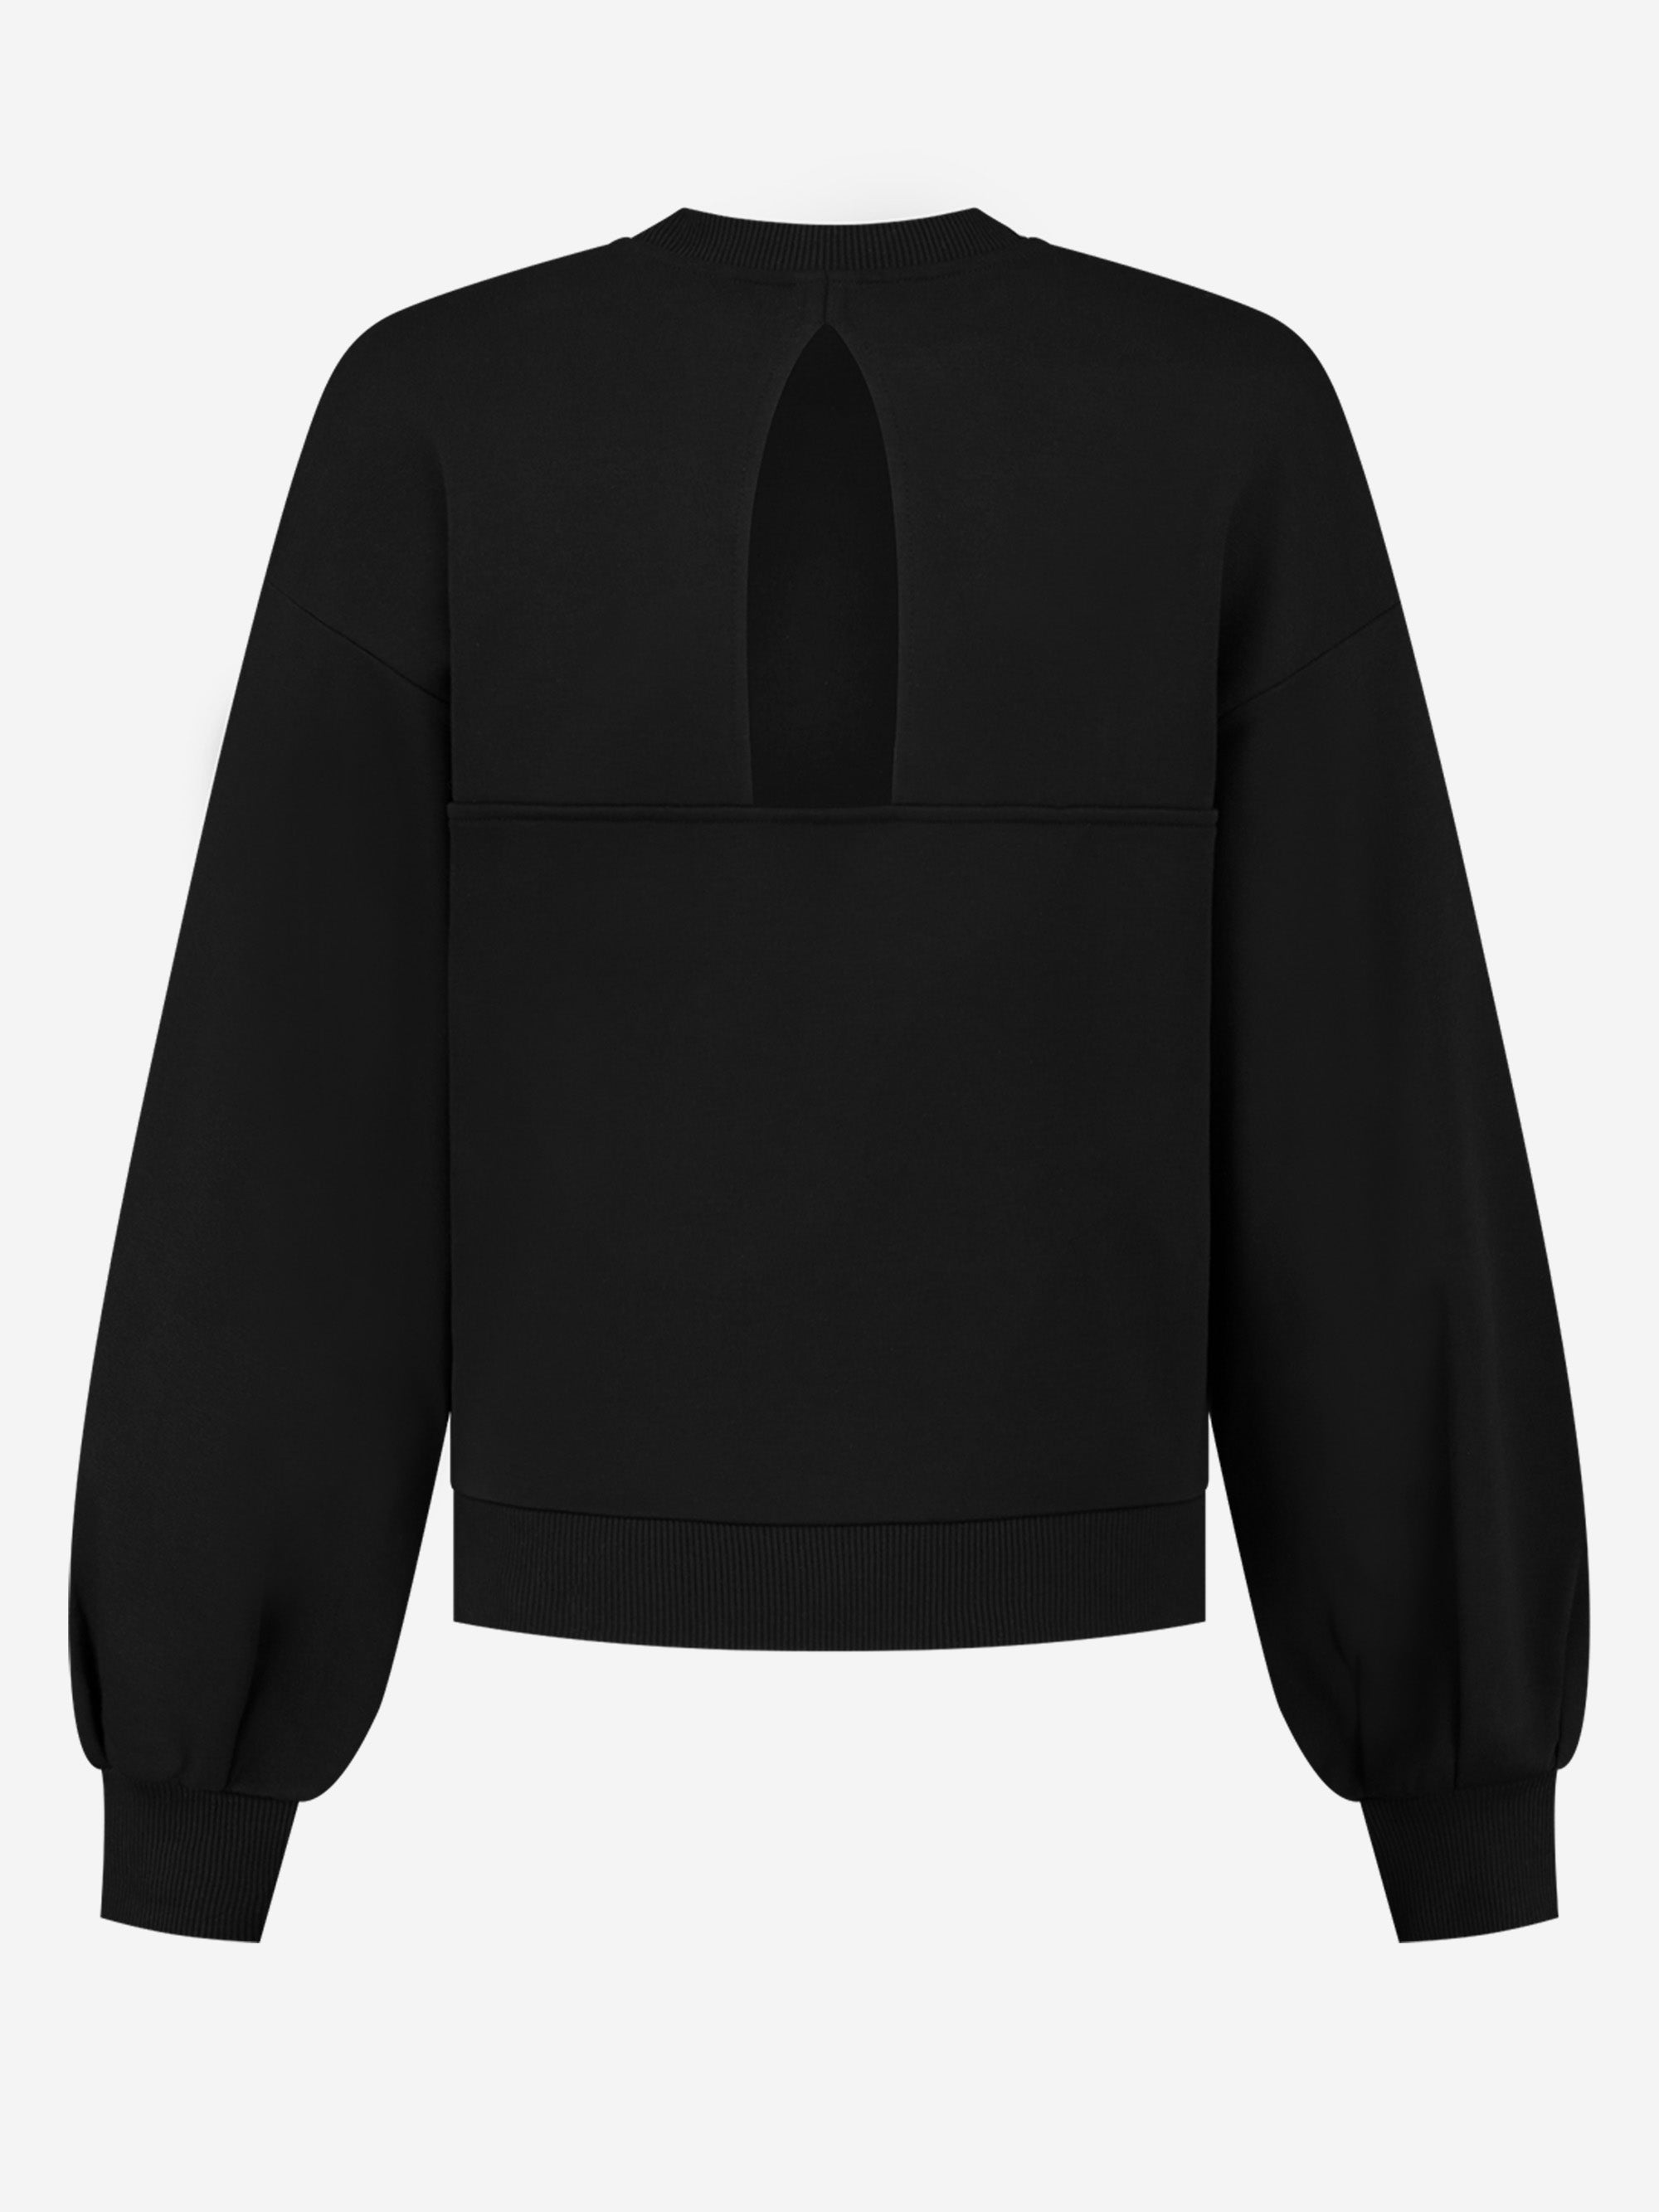 Nikkie Pleated Cuff Sweater Zwart